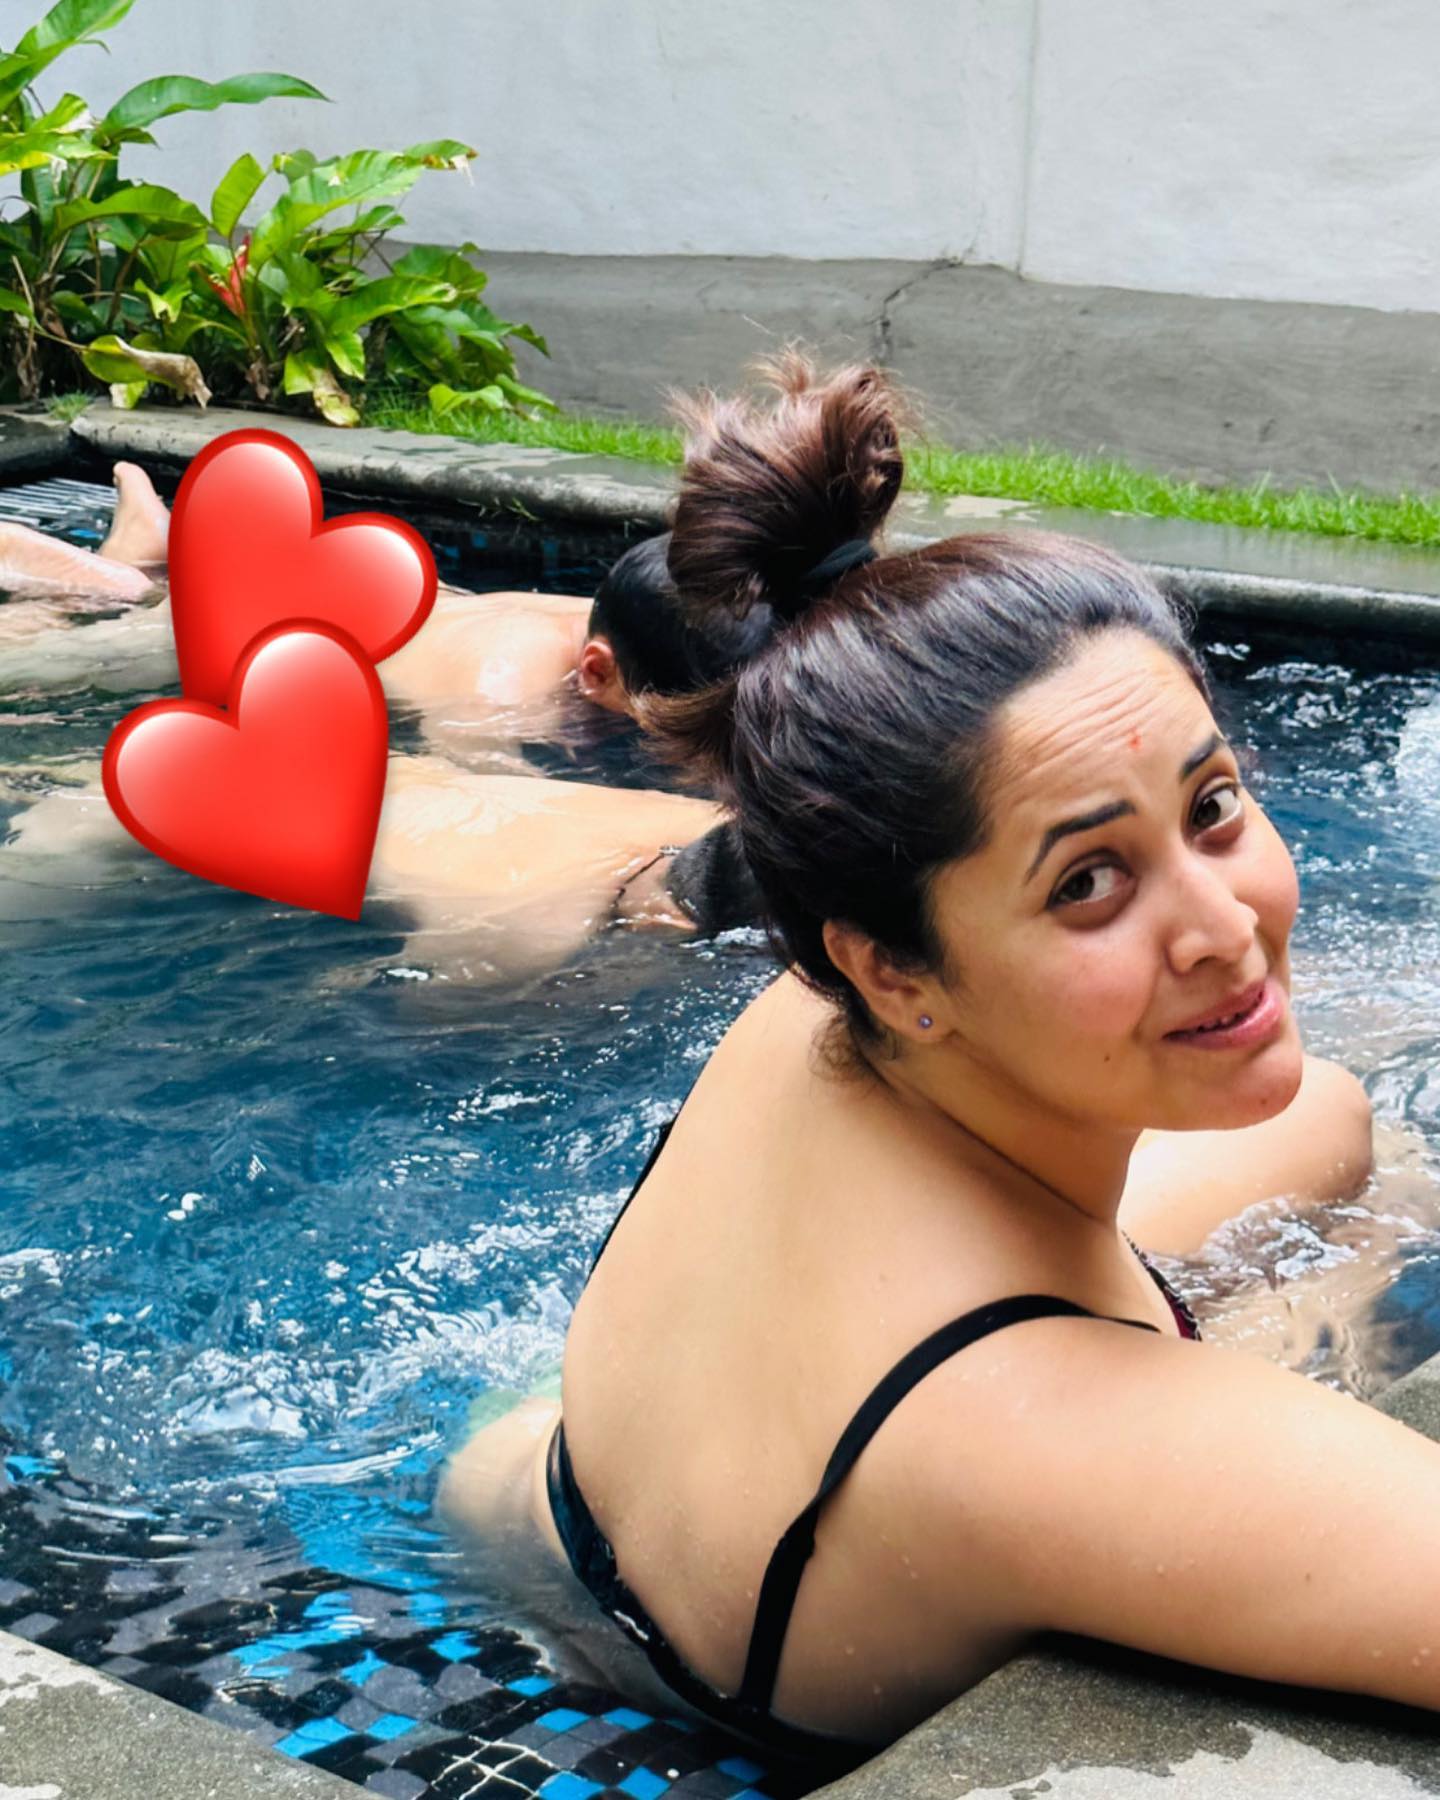 Anasuya Bhardwaj chill out in pool with bikini